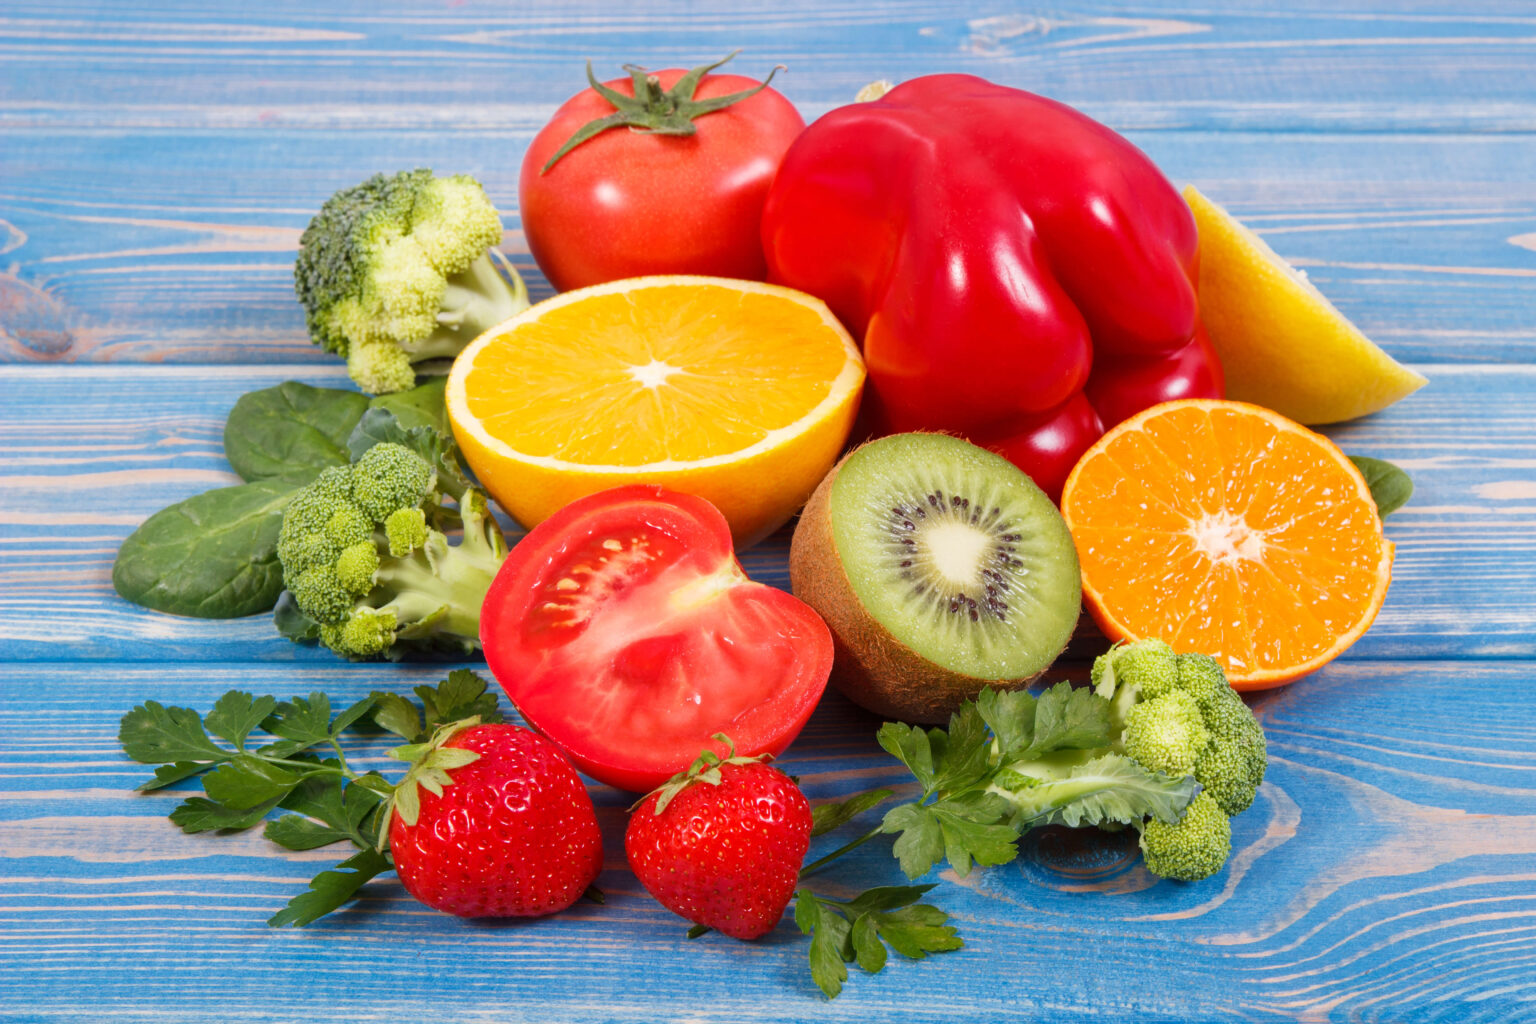 Không chỉ cam, còn nhiều thực phẩm giàu vitamin C mà bạn chưa biết đấy!